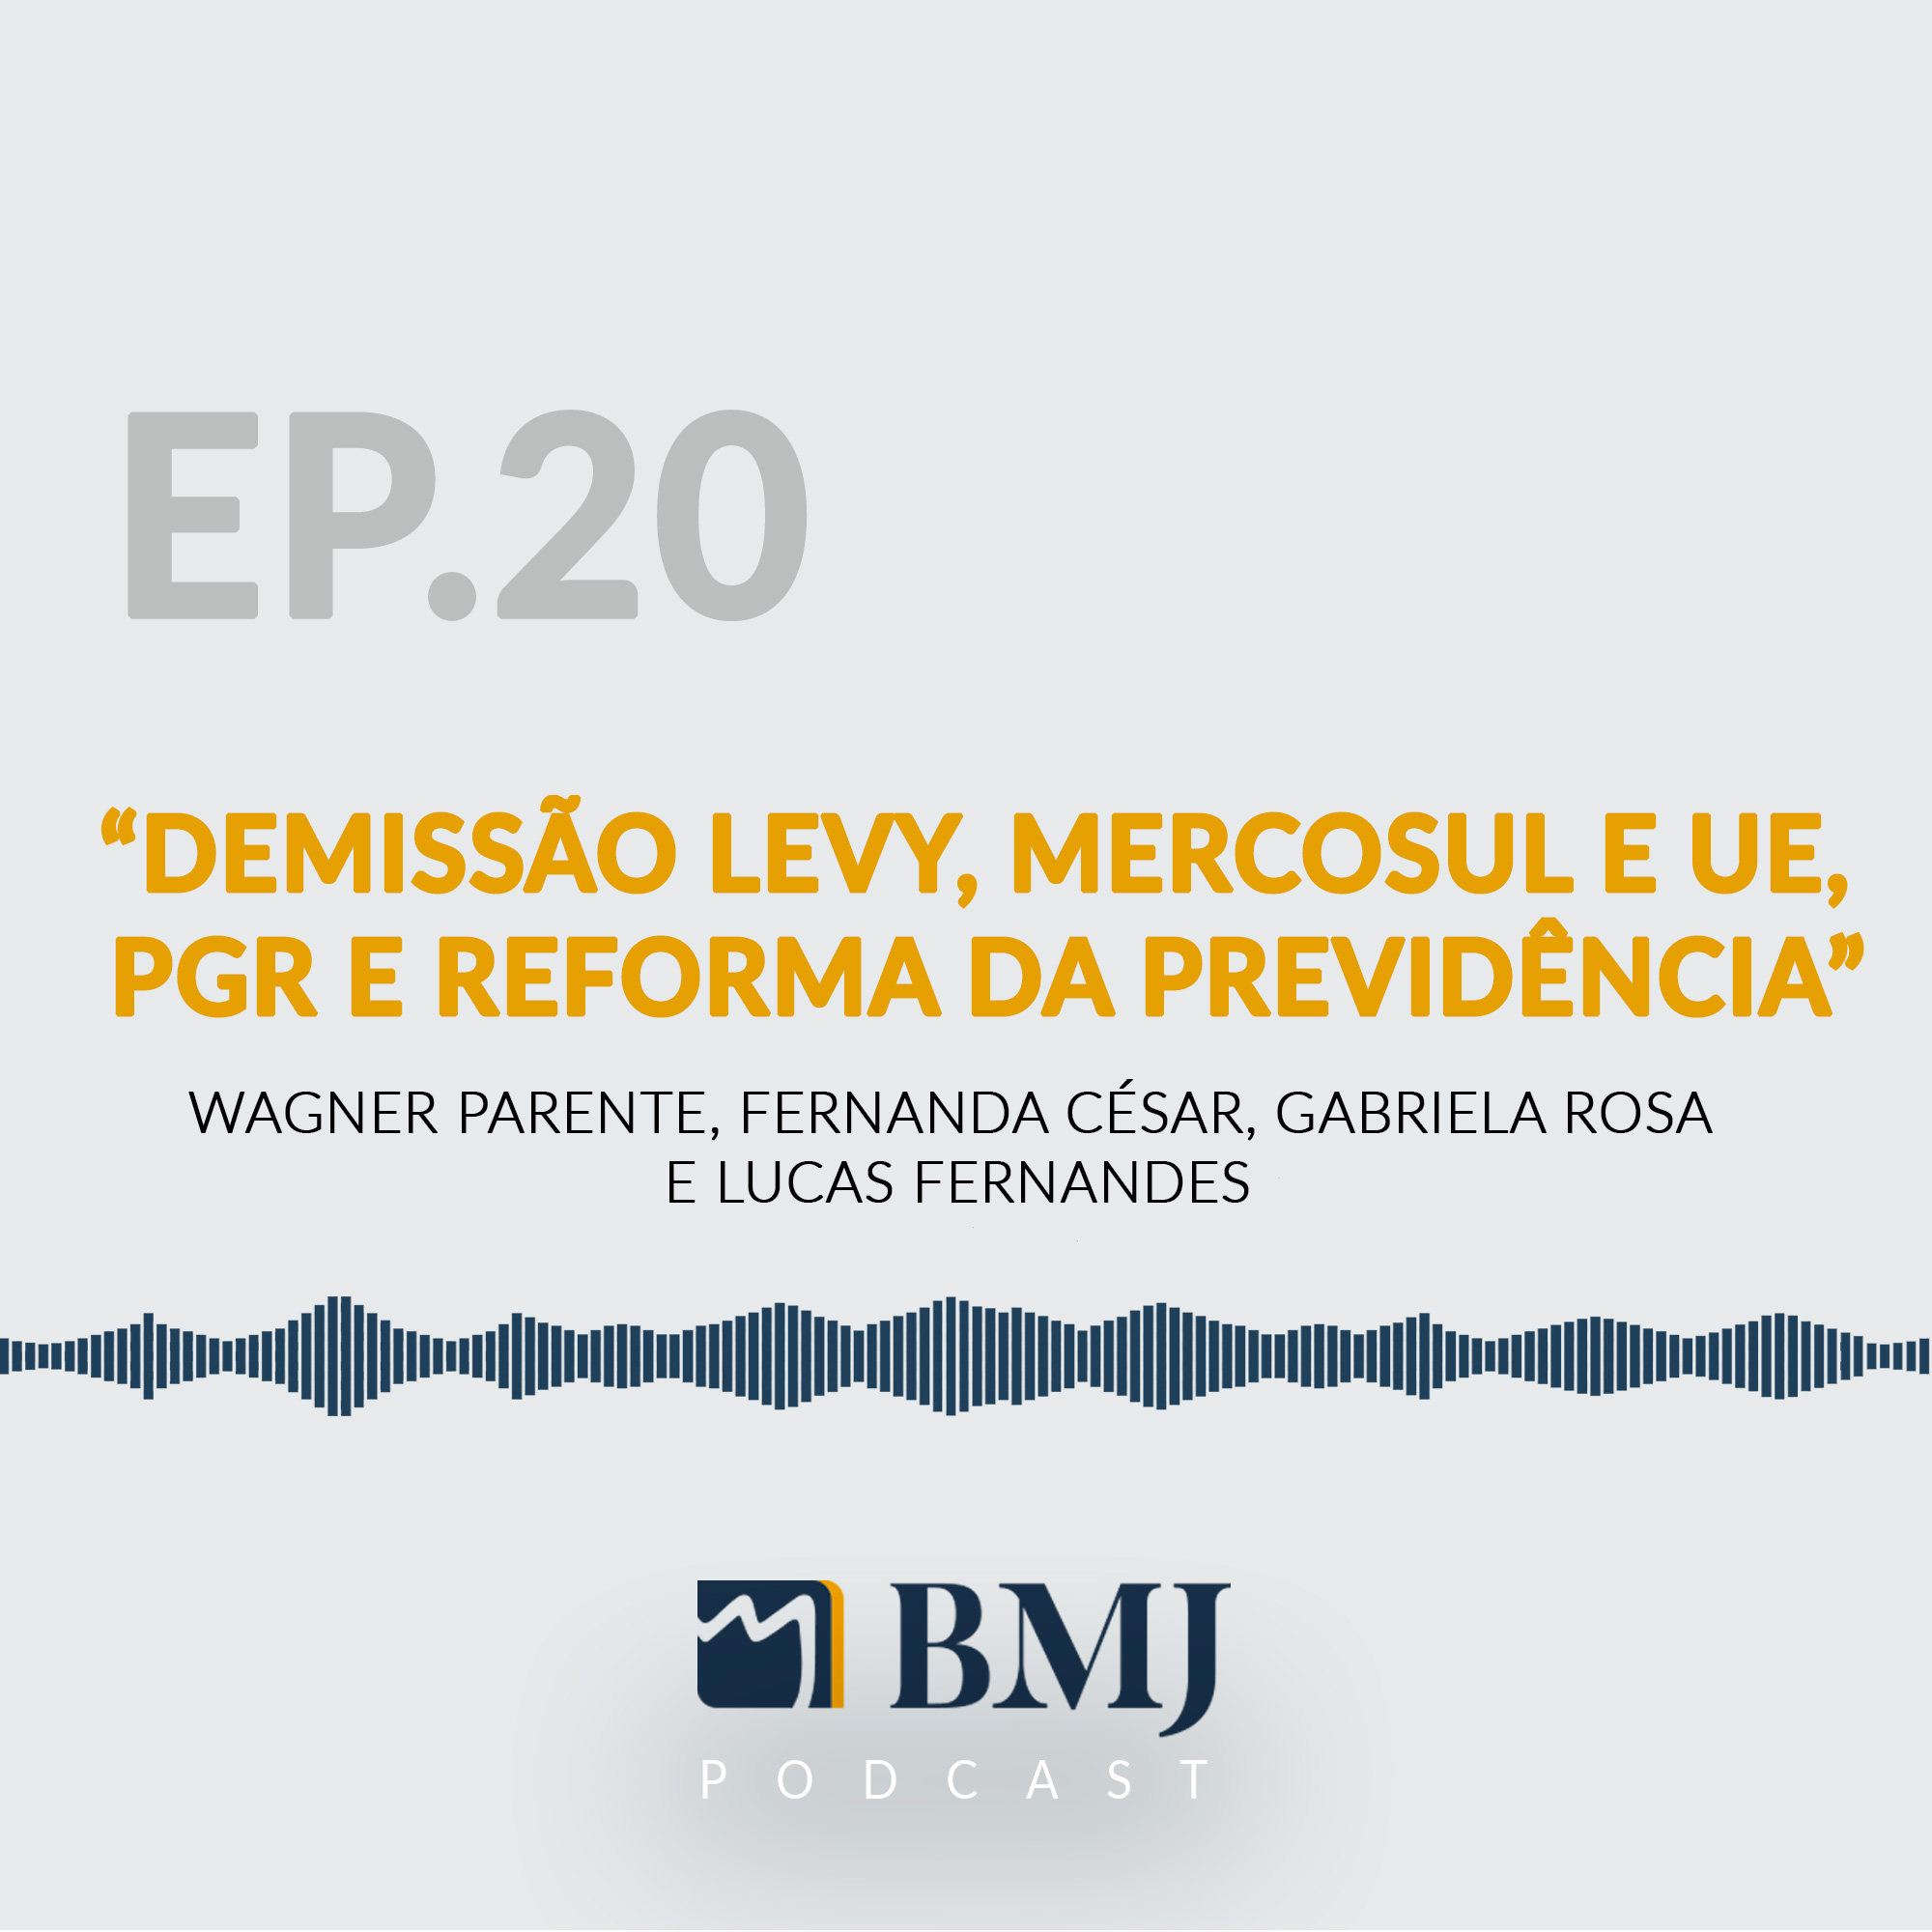 Demissão Levy, Mercosul e UE, PGR e Reforma da Previdência